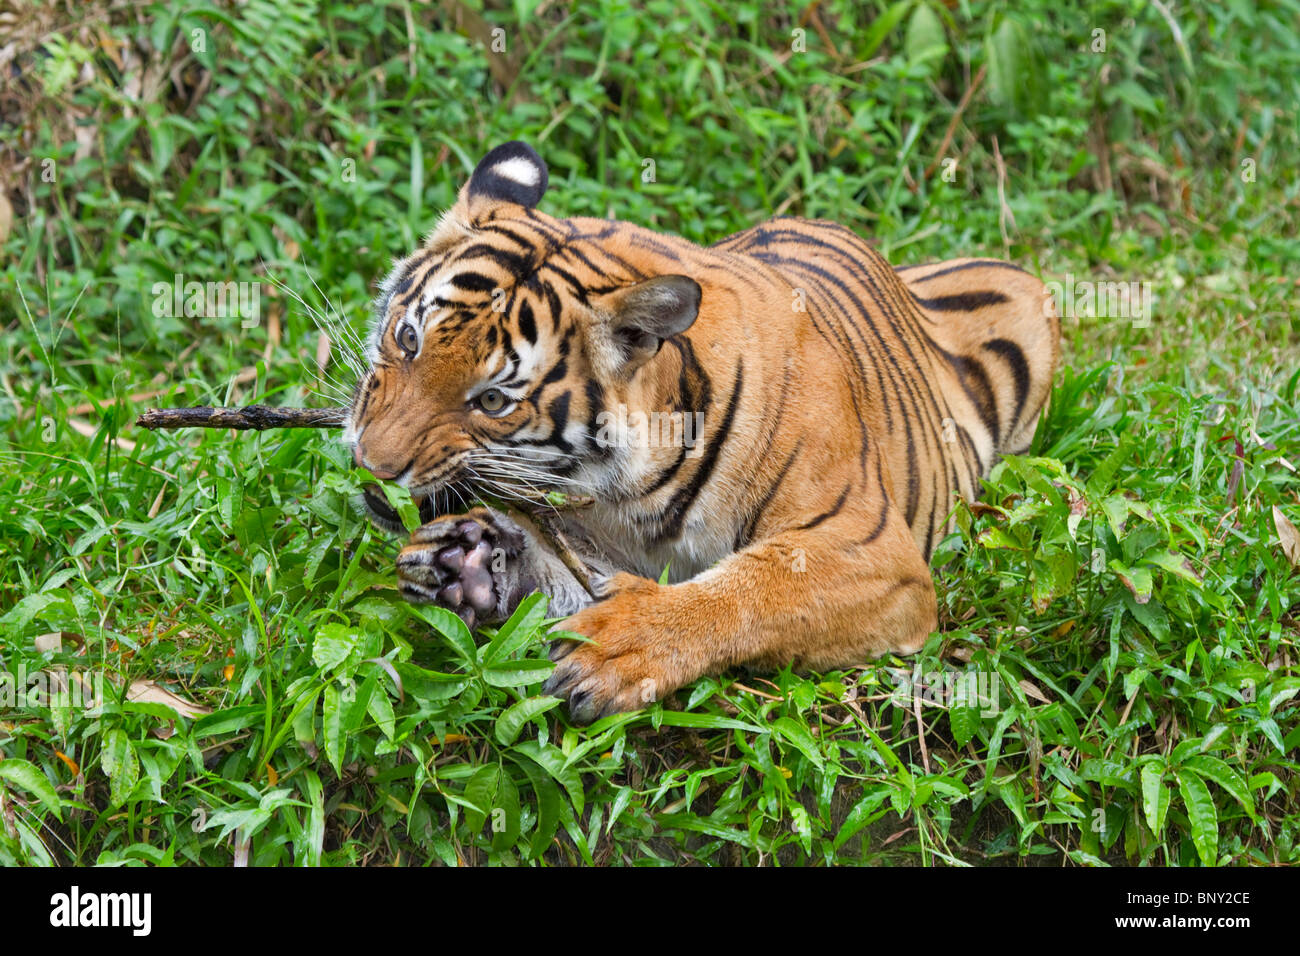 Sumatran tiger (Panthera tigris sumatrae). A tiger chews a stick in a playful mood, Stock Photo